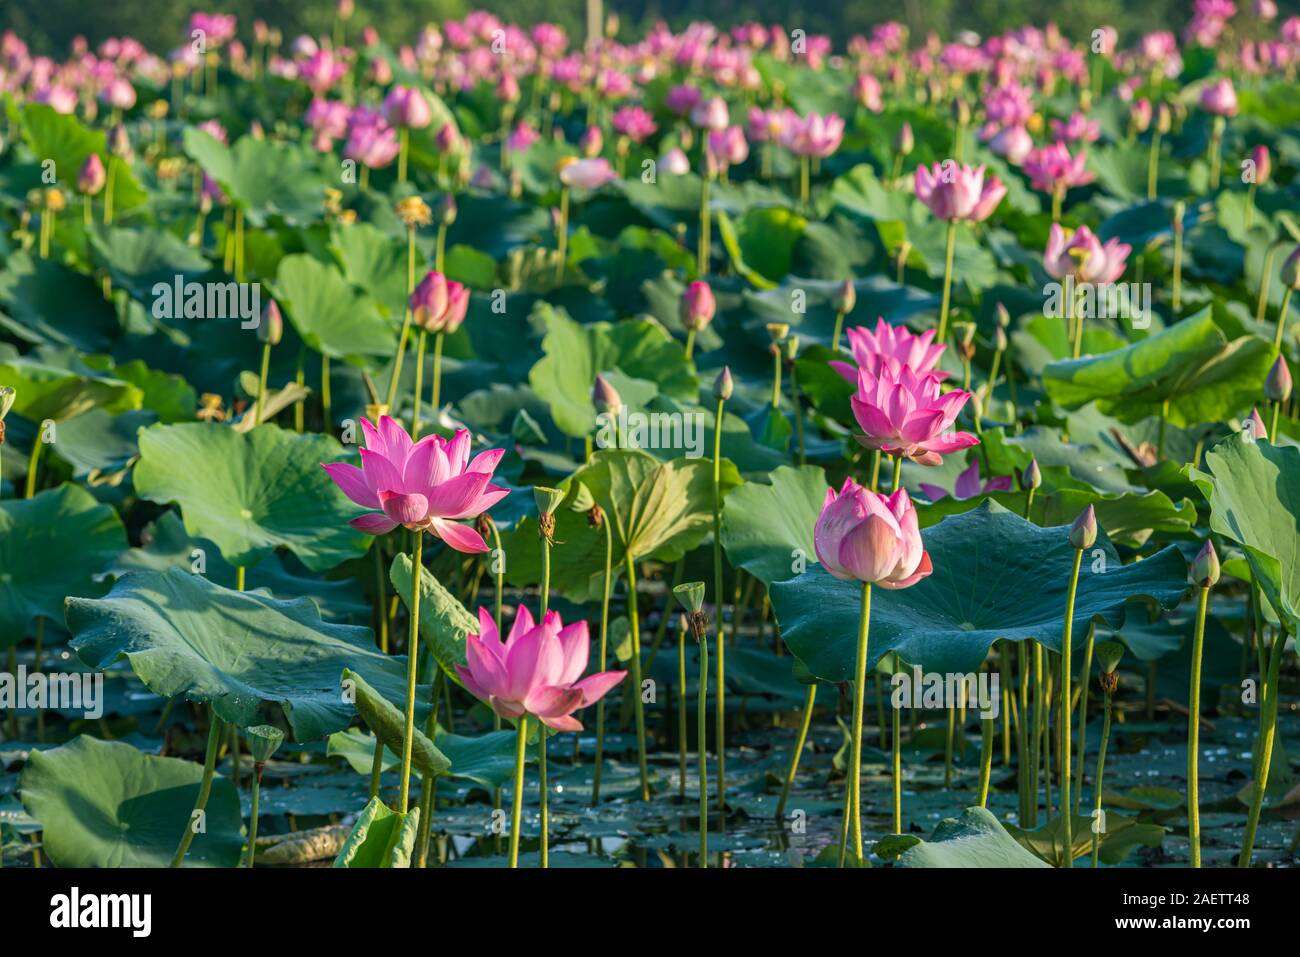 Beautiful scenery of blooming pink lotus flower plants on water ...